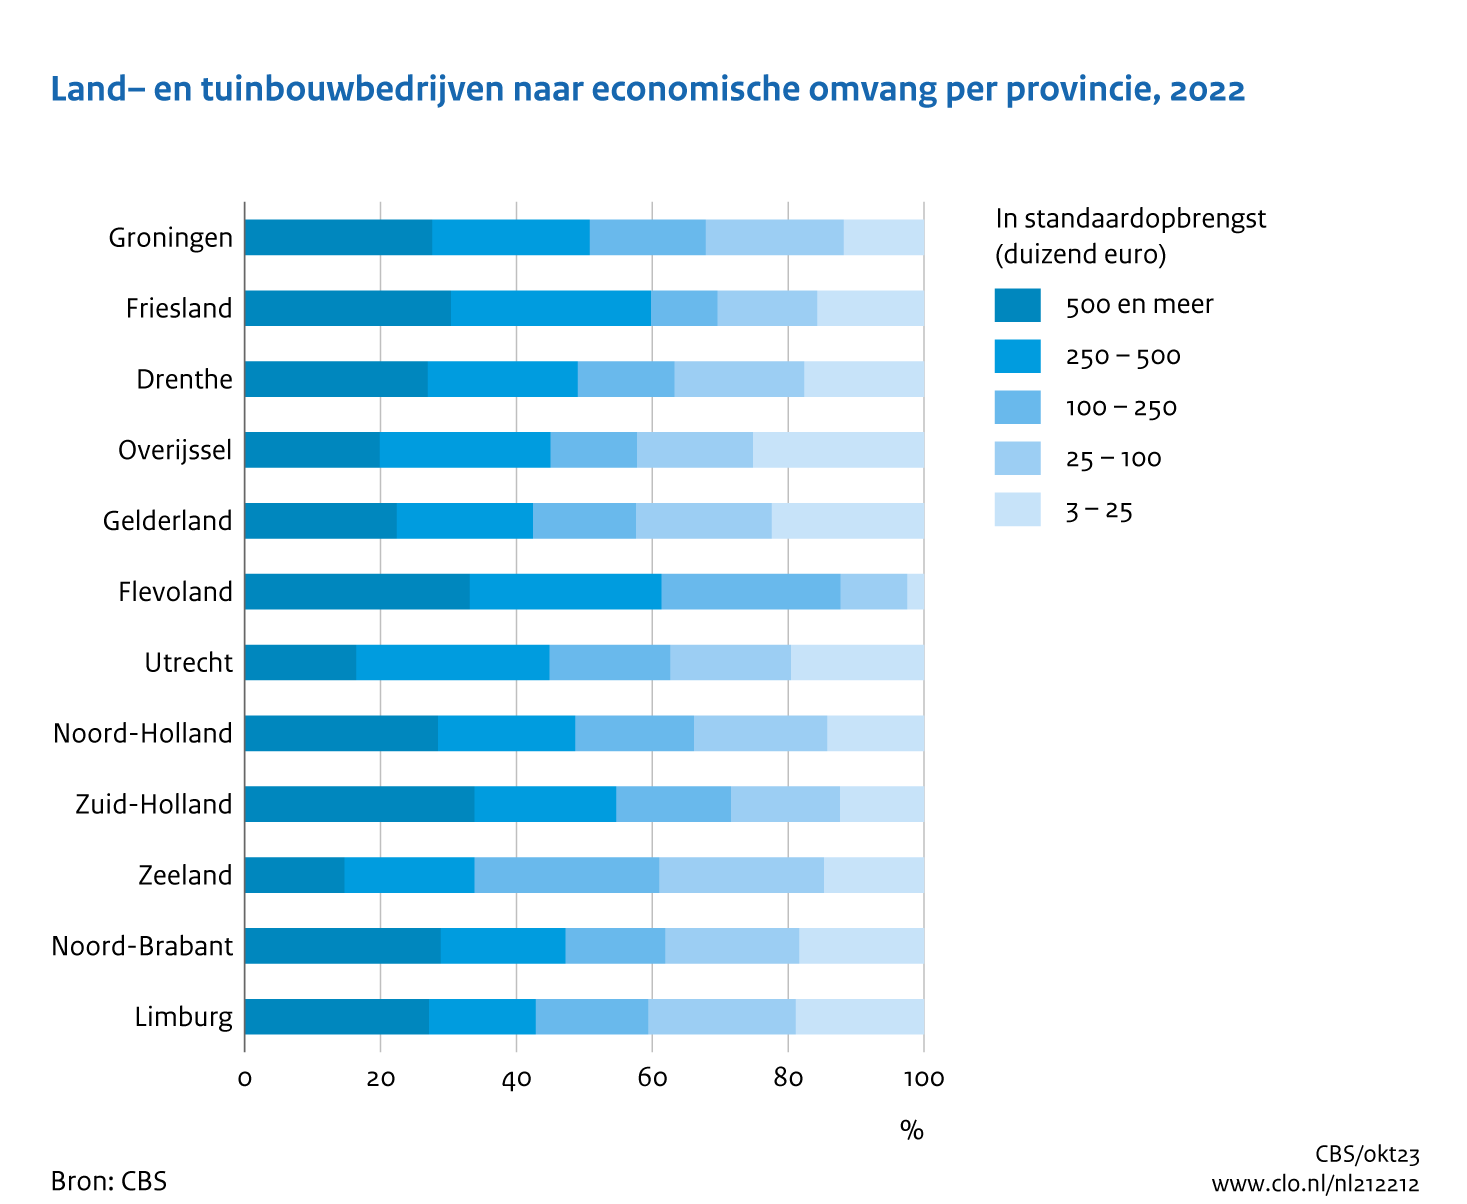 Figuur Land- en tuinbouwbedrijven naar economische omvang per provincie, 2022. In de rest van de tekst wordt deze figuur uitgebreider uitgelegd.